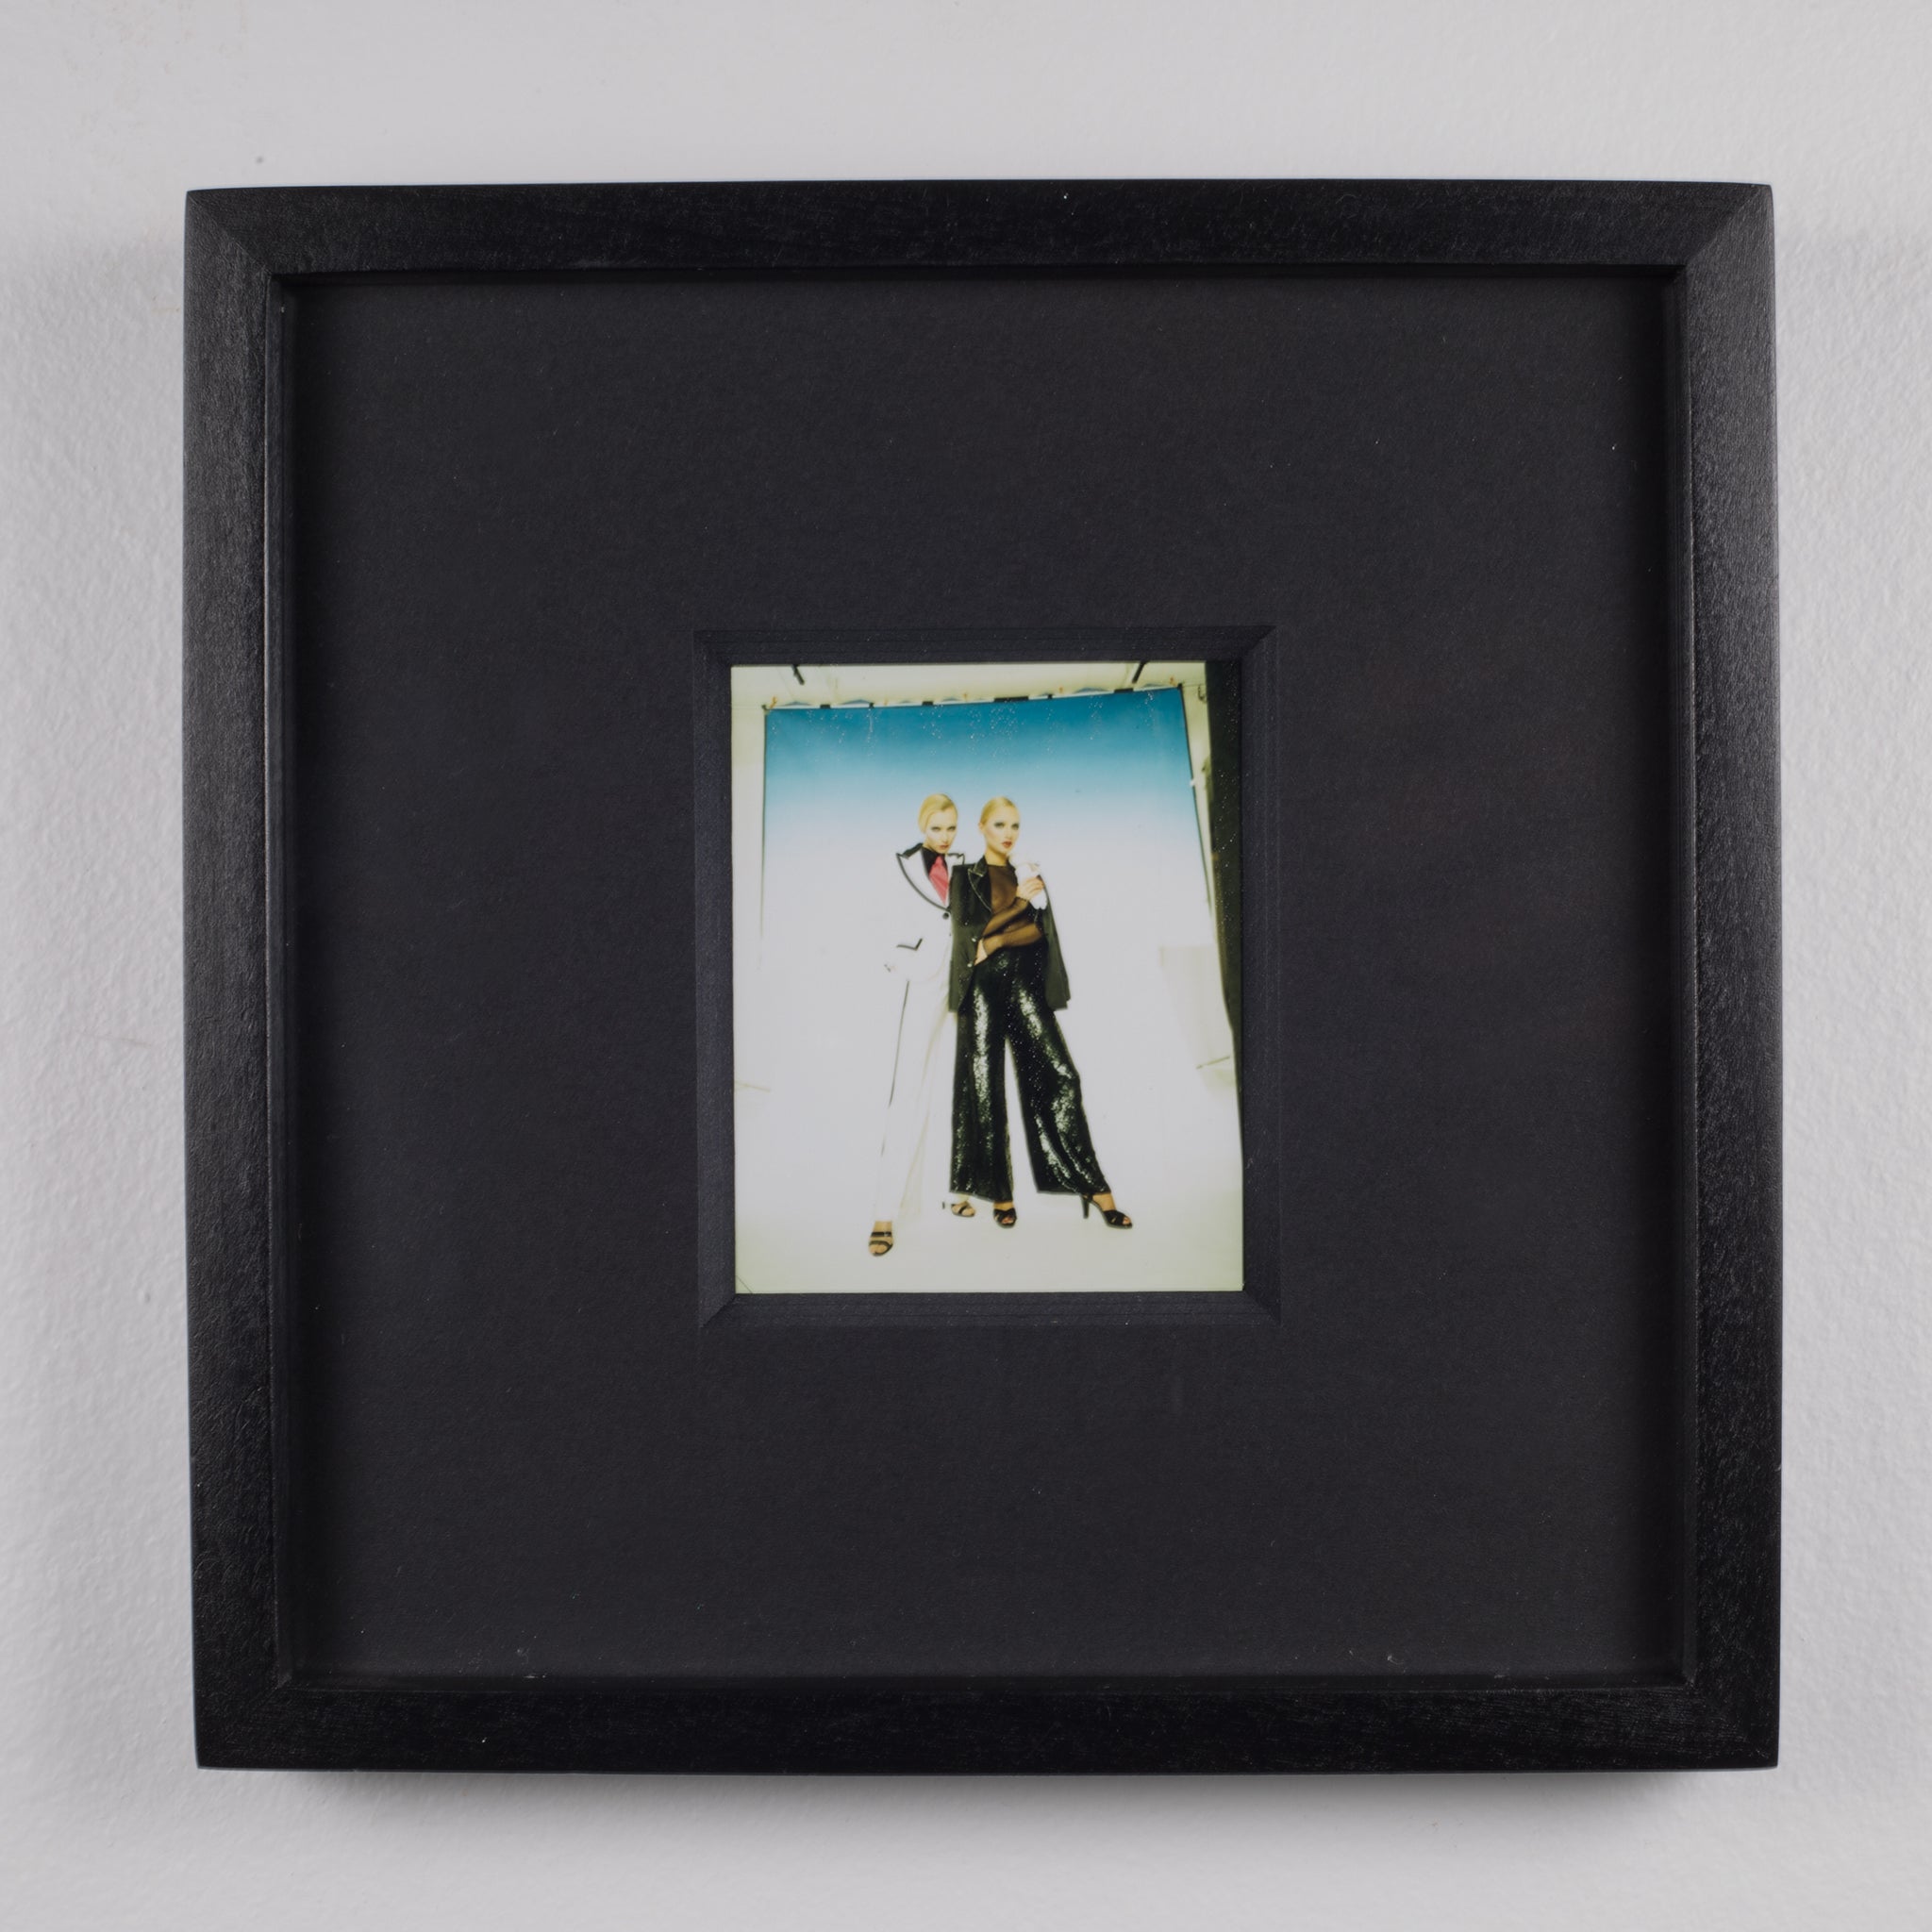 Polaroid Test Image #7 by Denise Tarantino for Dah Len Studios c. 1990 ...